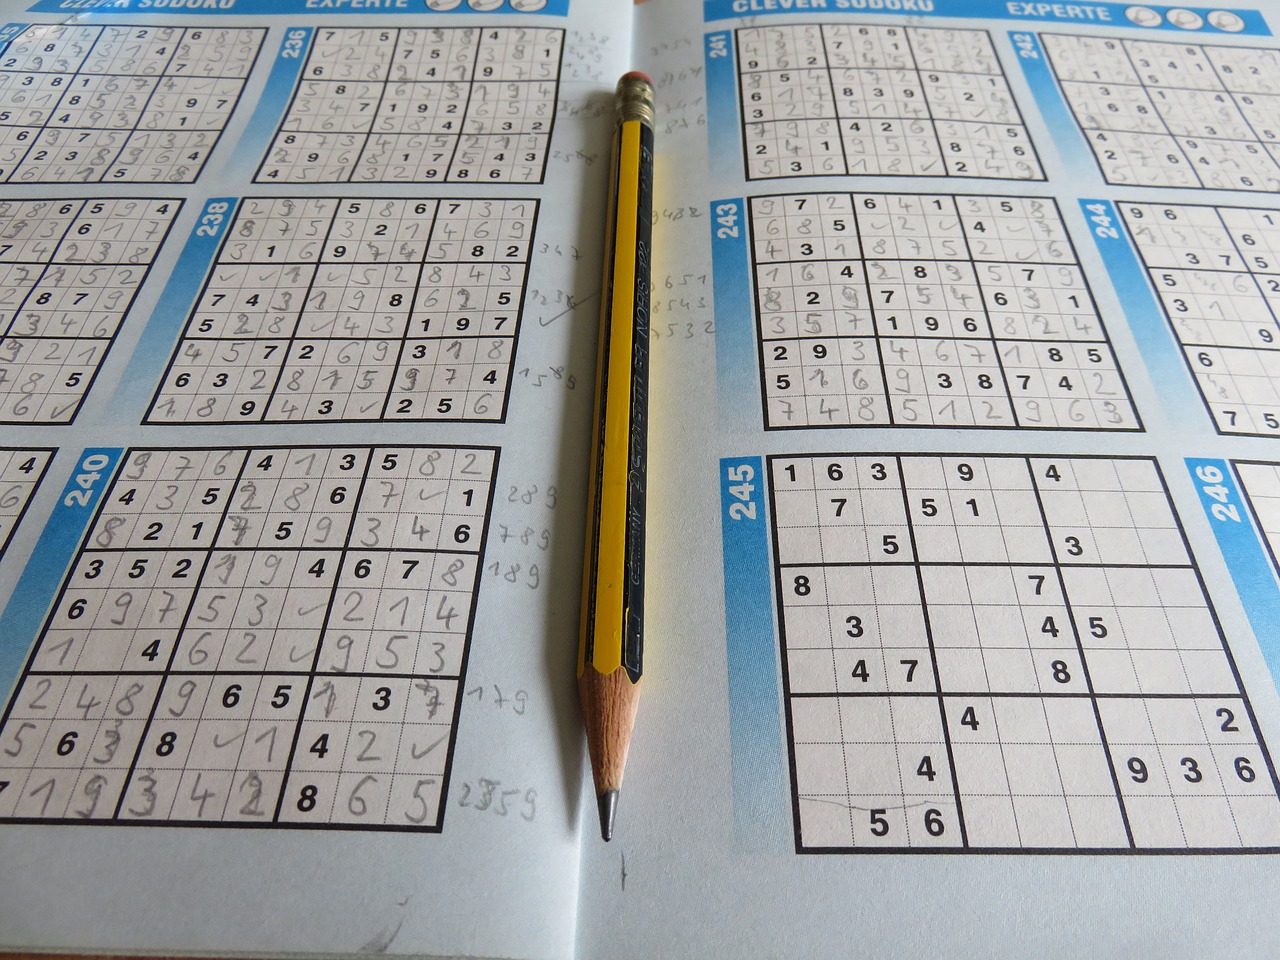 Zasady gry w sudoku